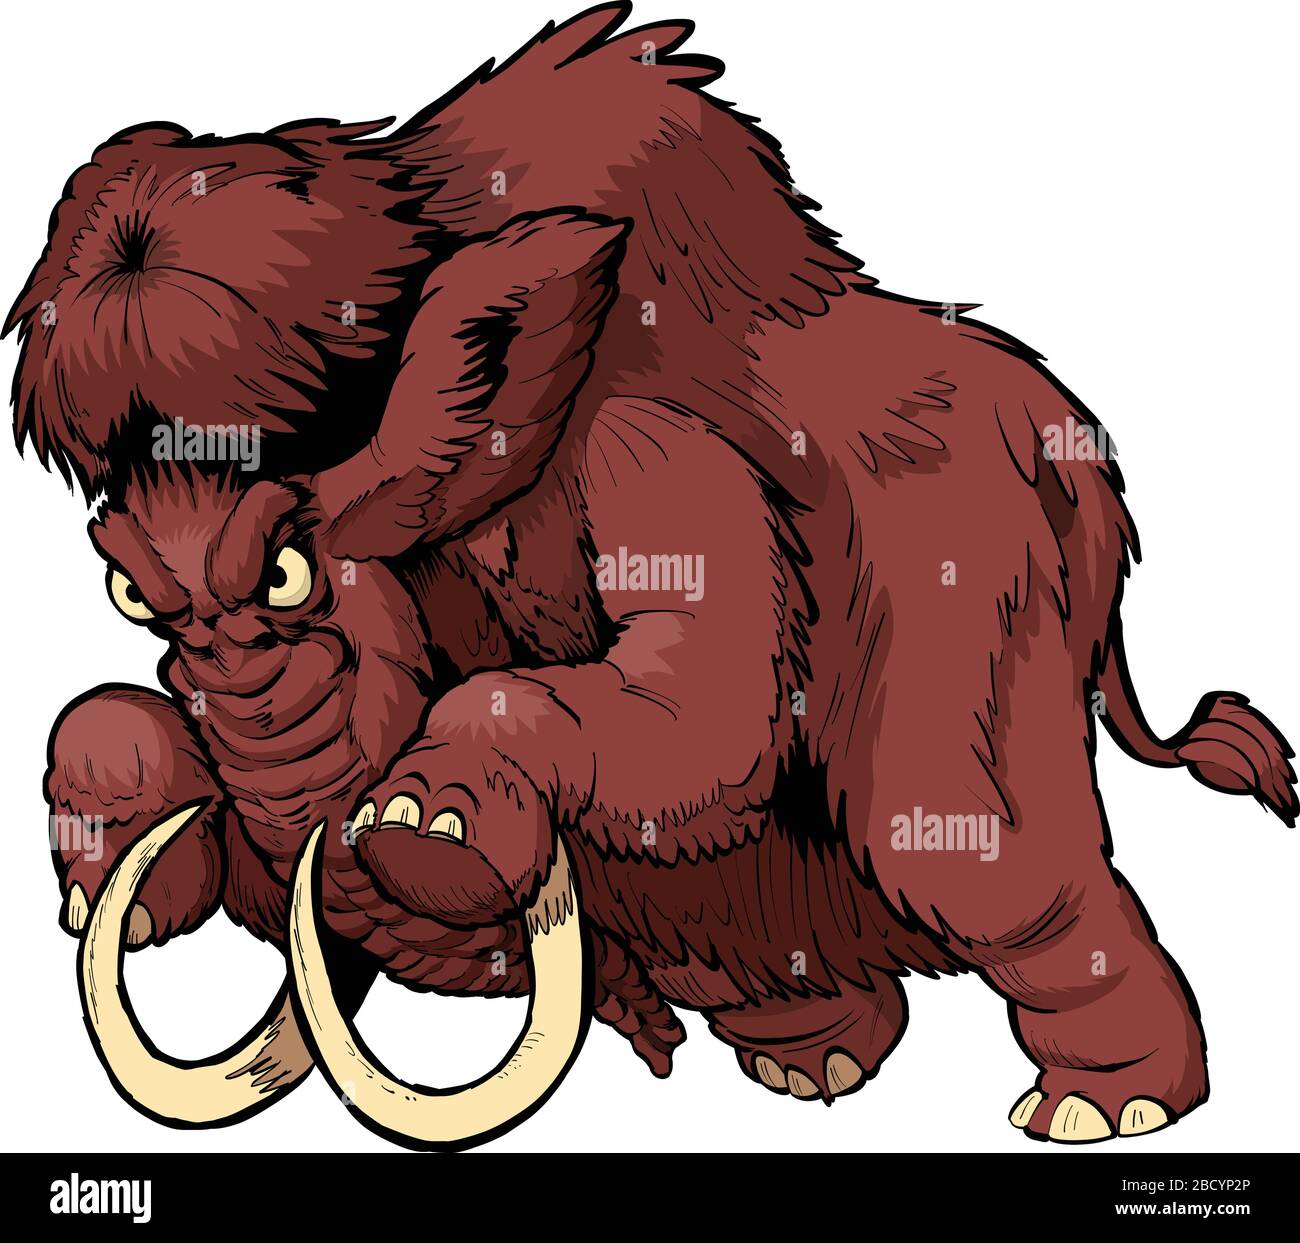 Illustrazione della clip del fumetto vettoriale di una mascotte di mammut lanoso arrabbiato di carica in strati separati. Illustrazione Vettoriale